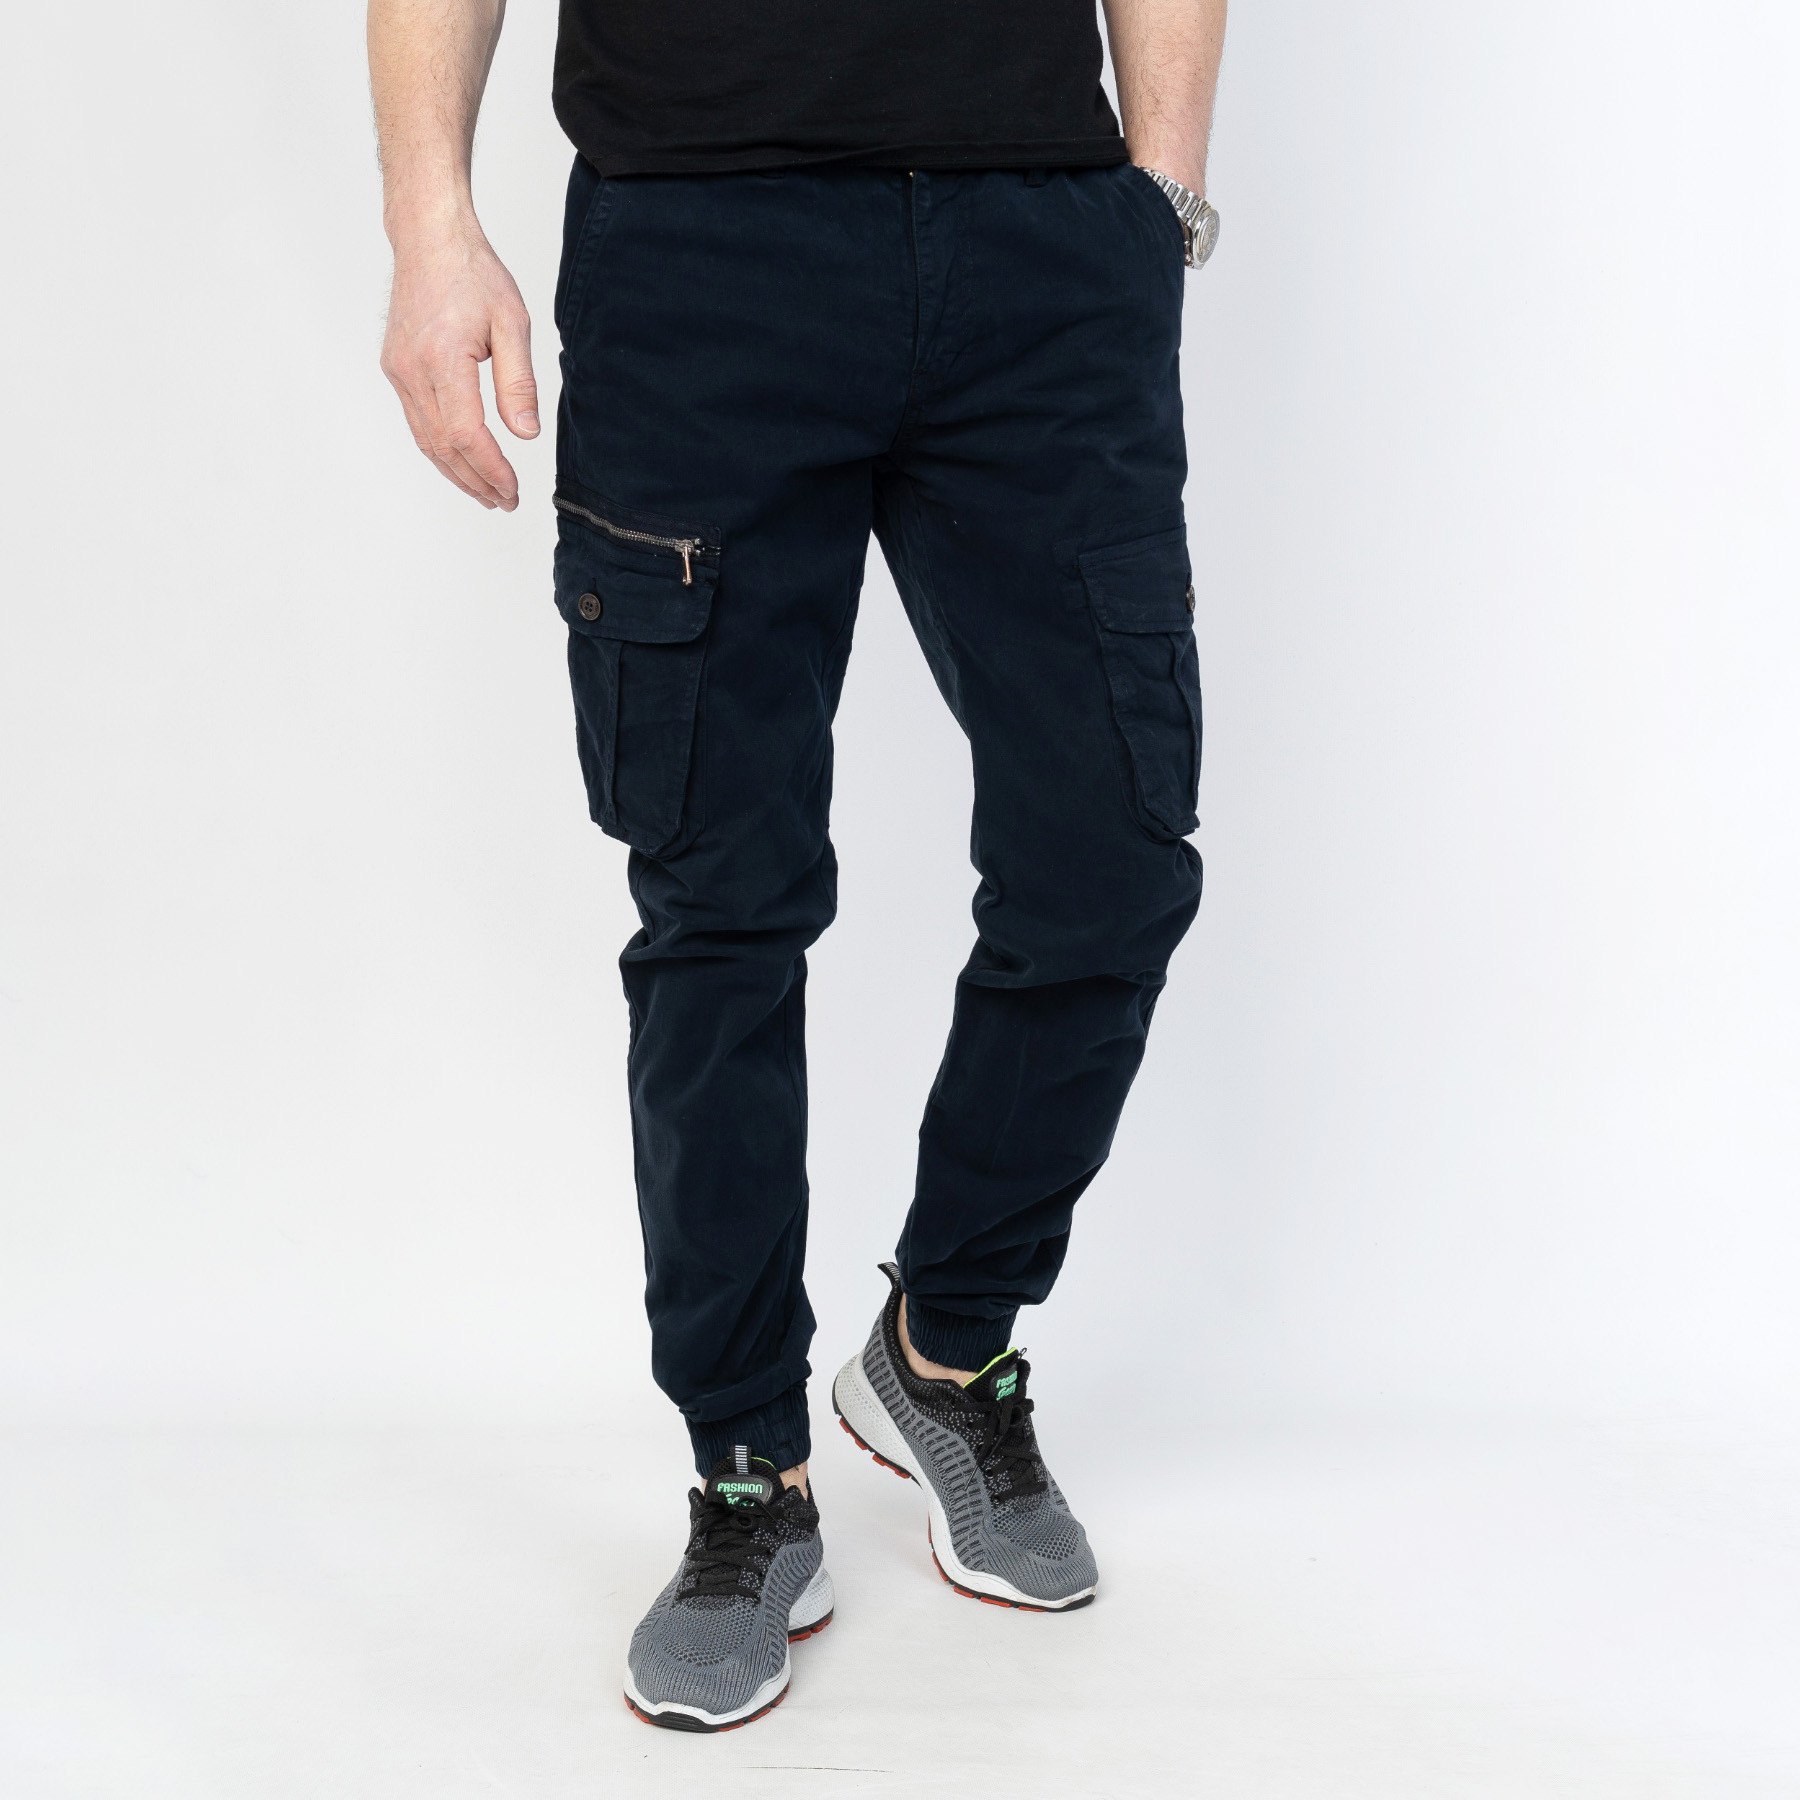 2073-3 TICLACE брюки карго мужские тёмно-синие стрейчевые (8 ед. размер: 28.29.30.31.32.33.34.36)